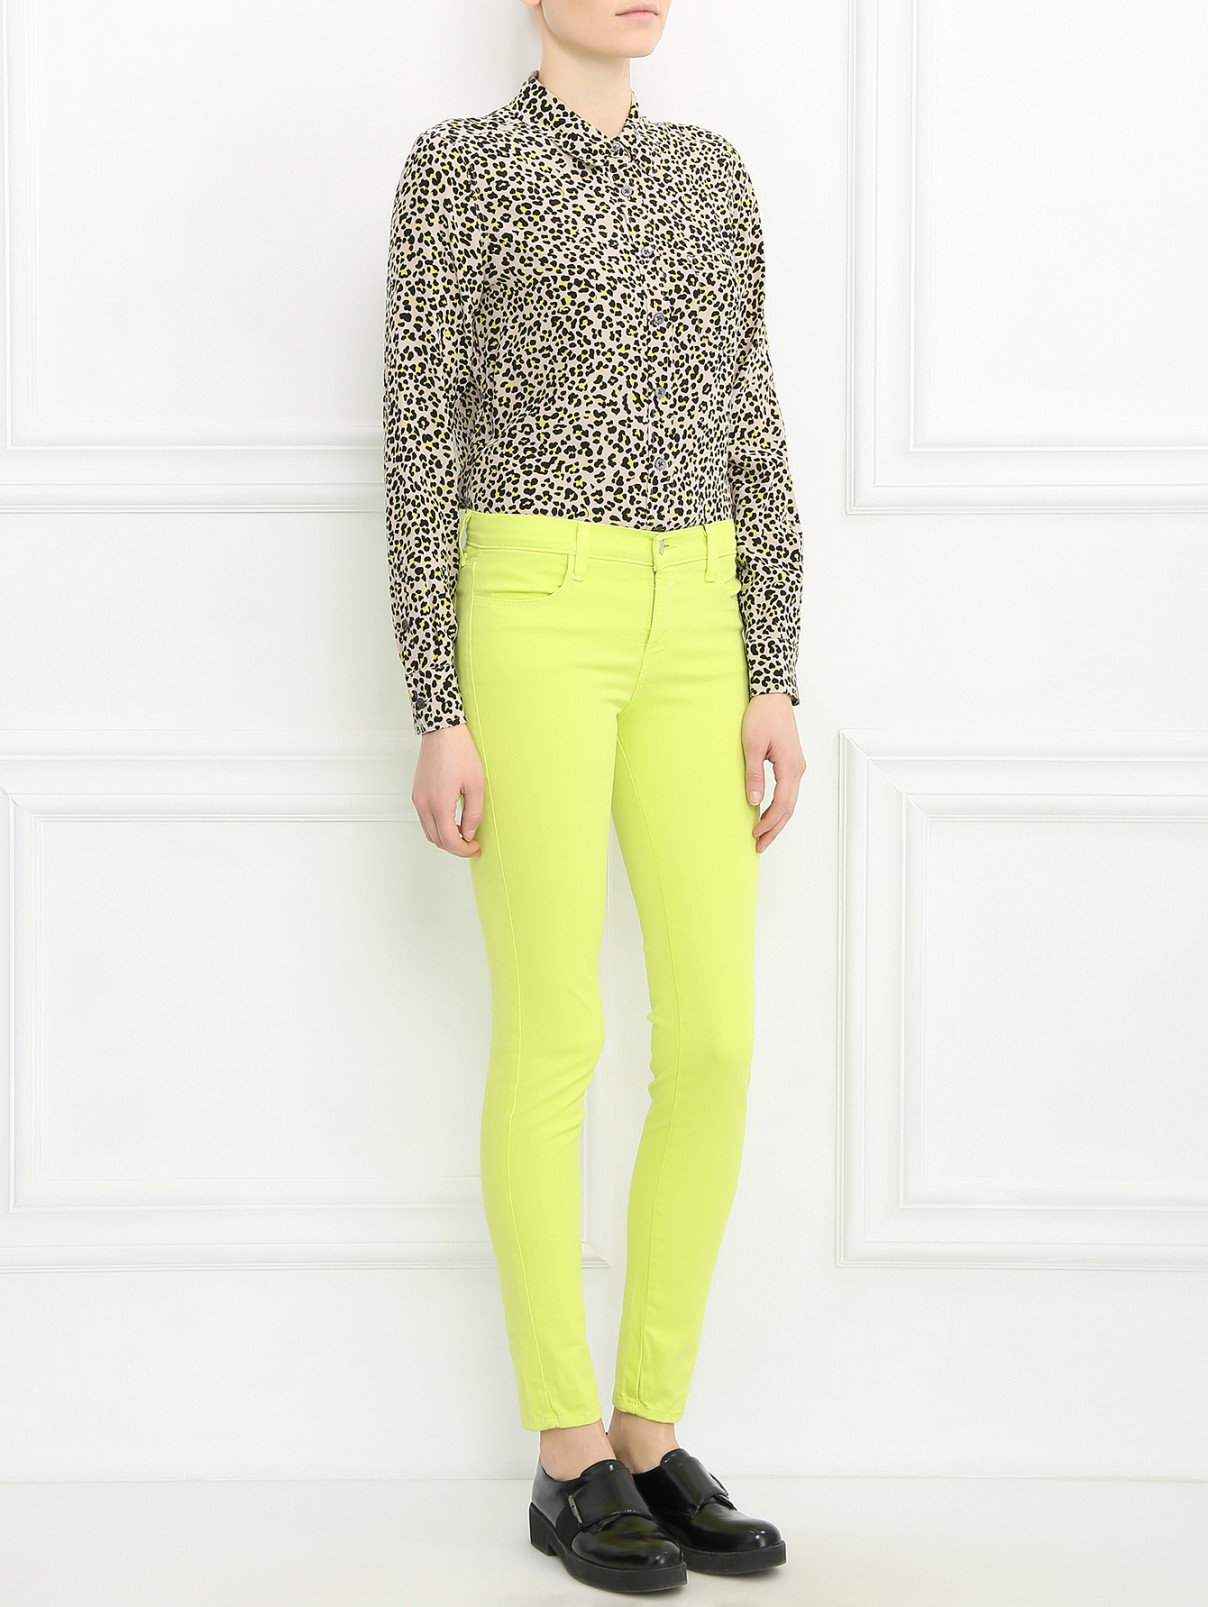 Узкие джинсы J Brand  –  Модель Общий вид  – Цвет:  Зеленый